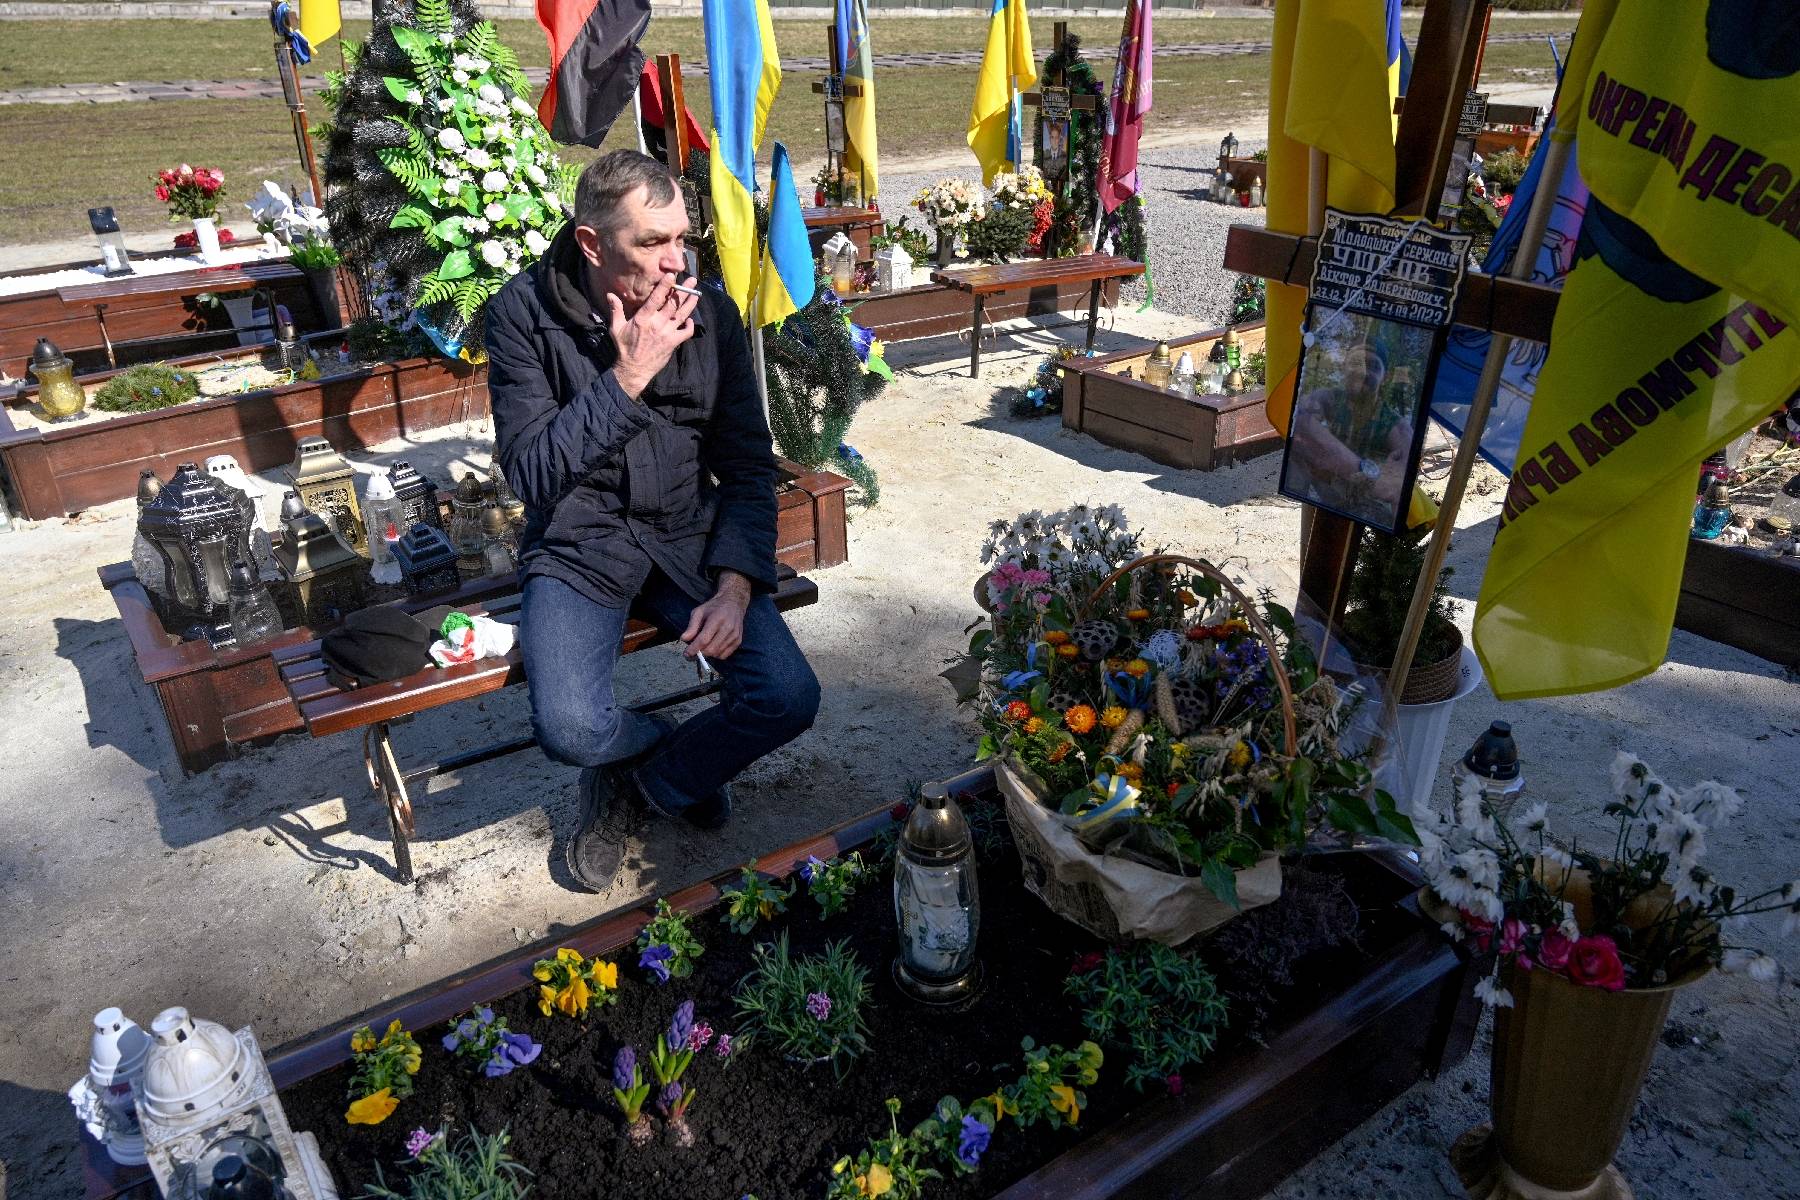 En Ukraine, ces cadeaux d'amour et de chagrin sur les tombes de soldats